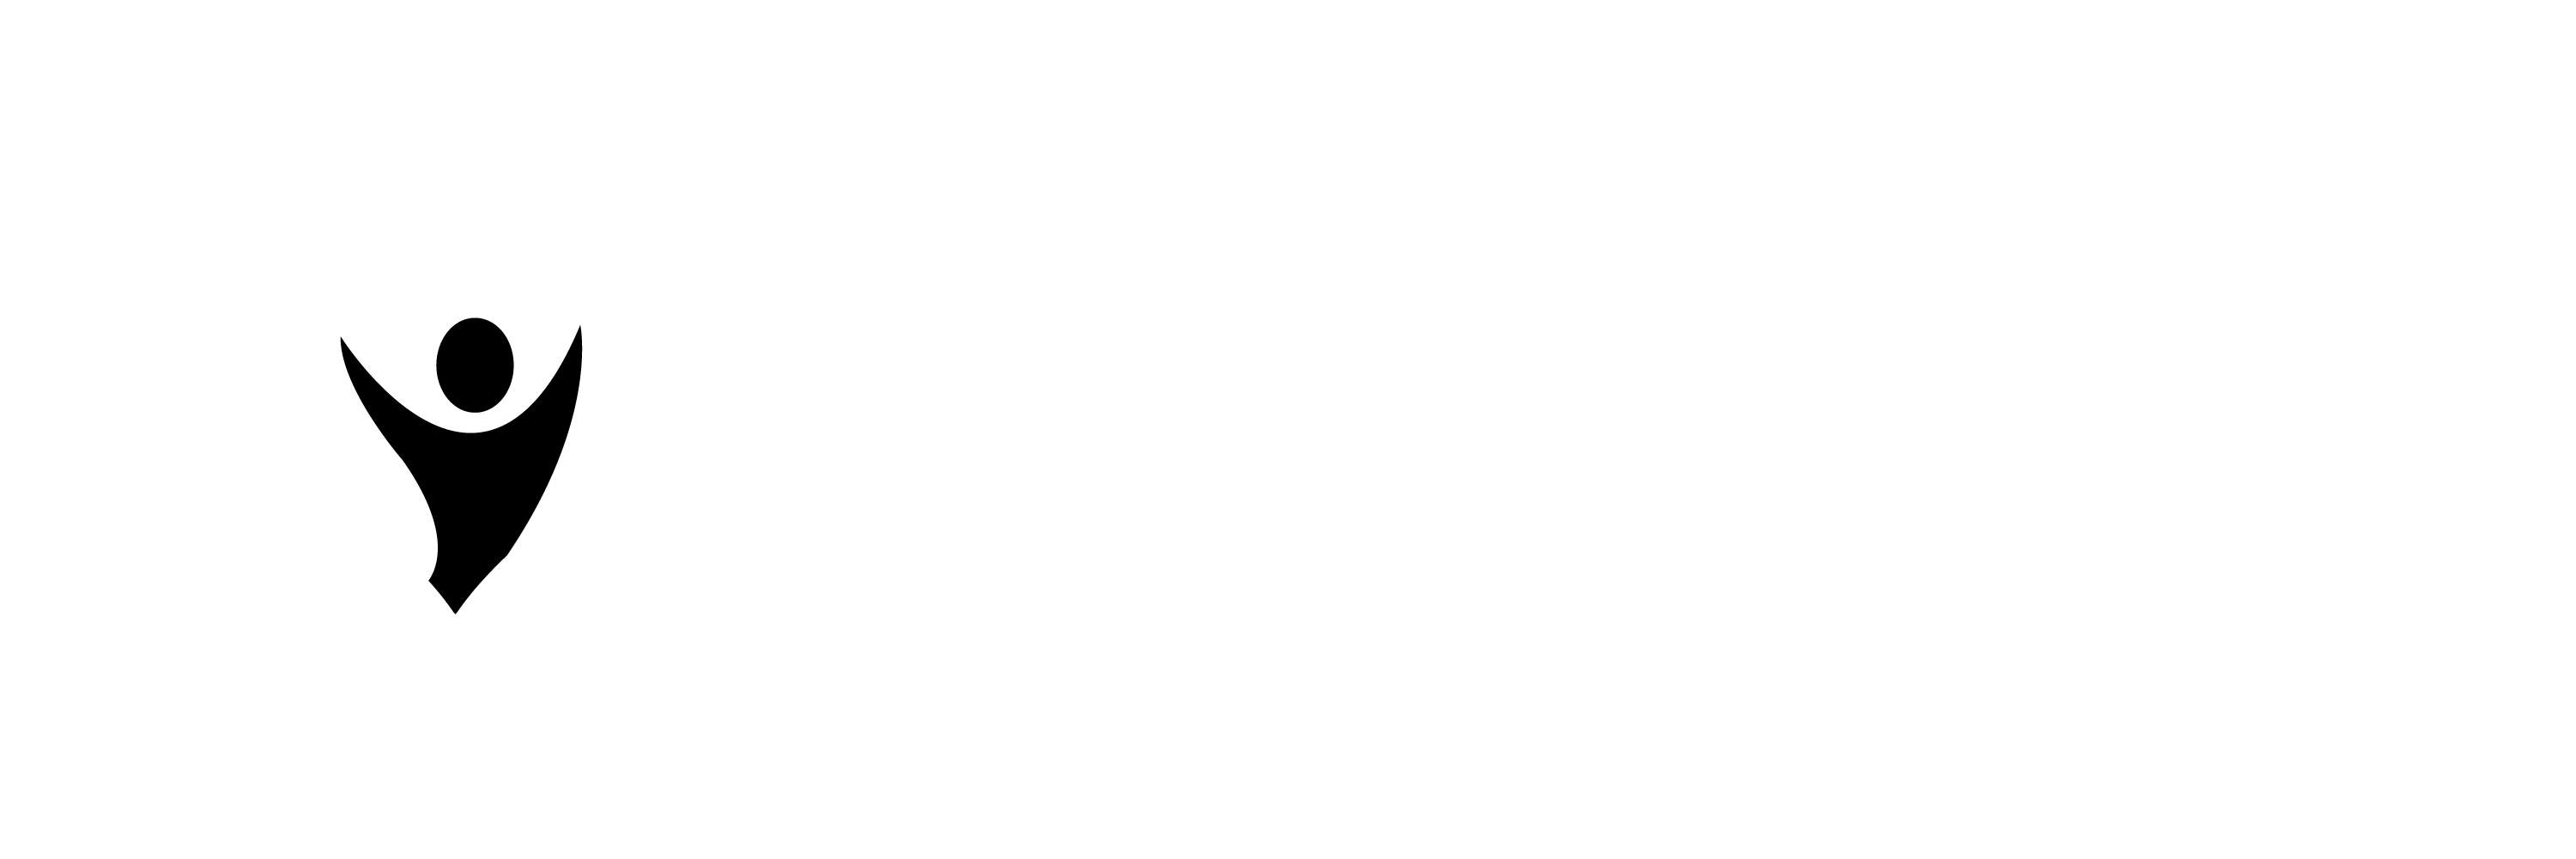 Autism Behavior